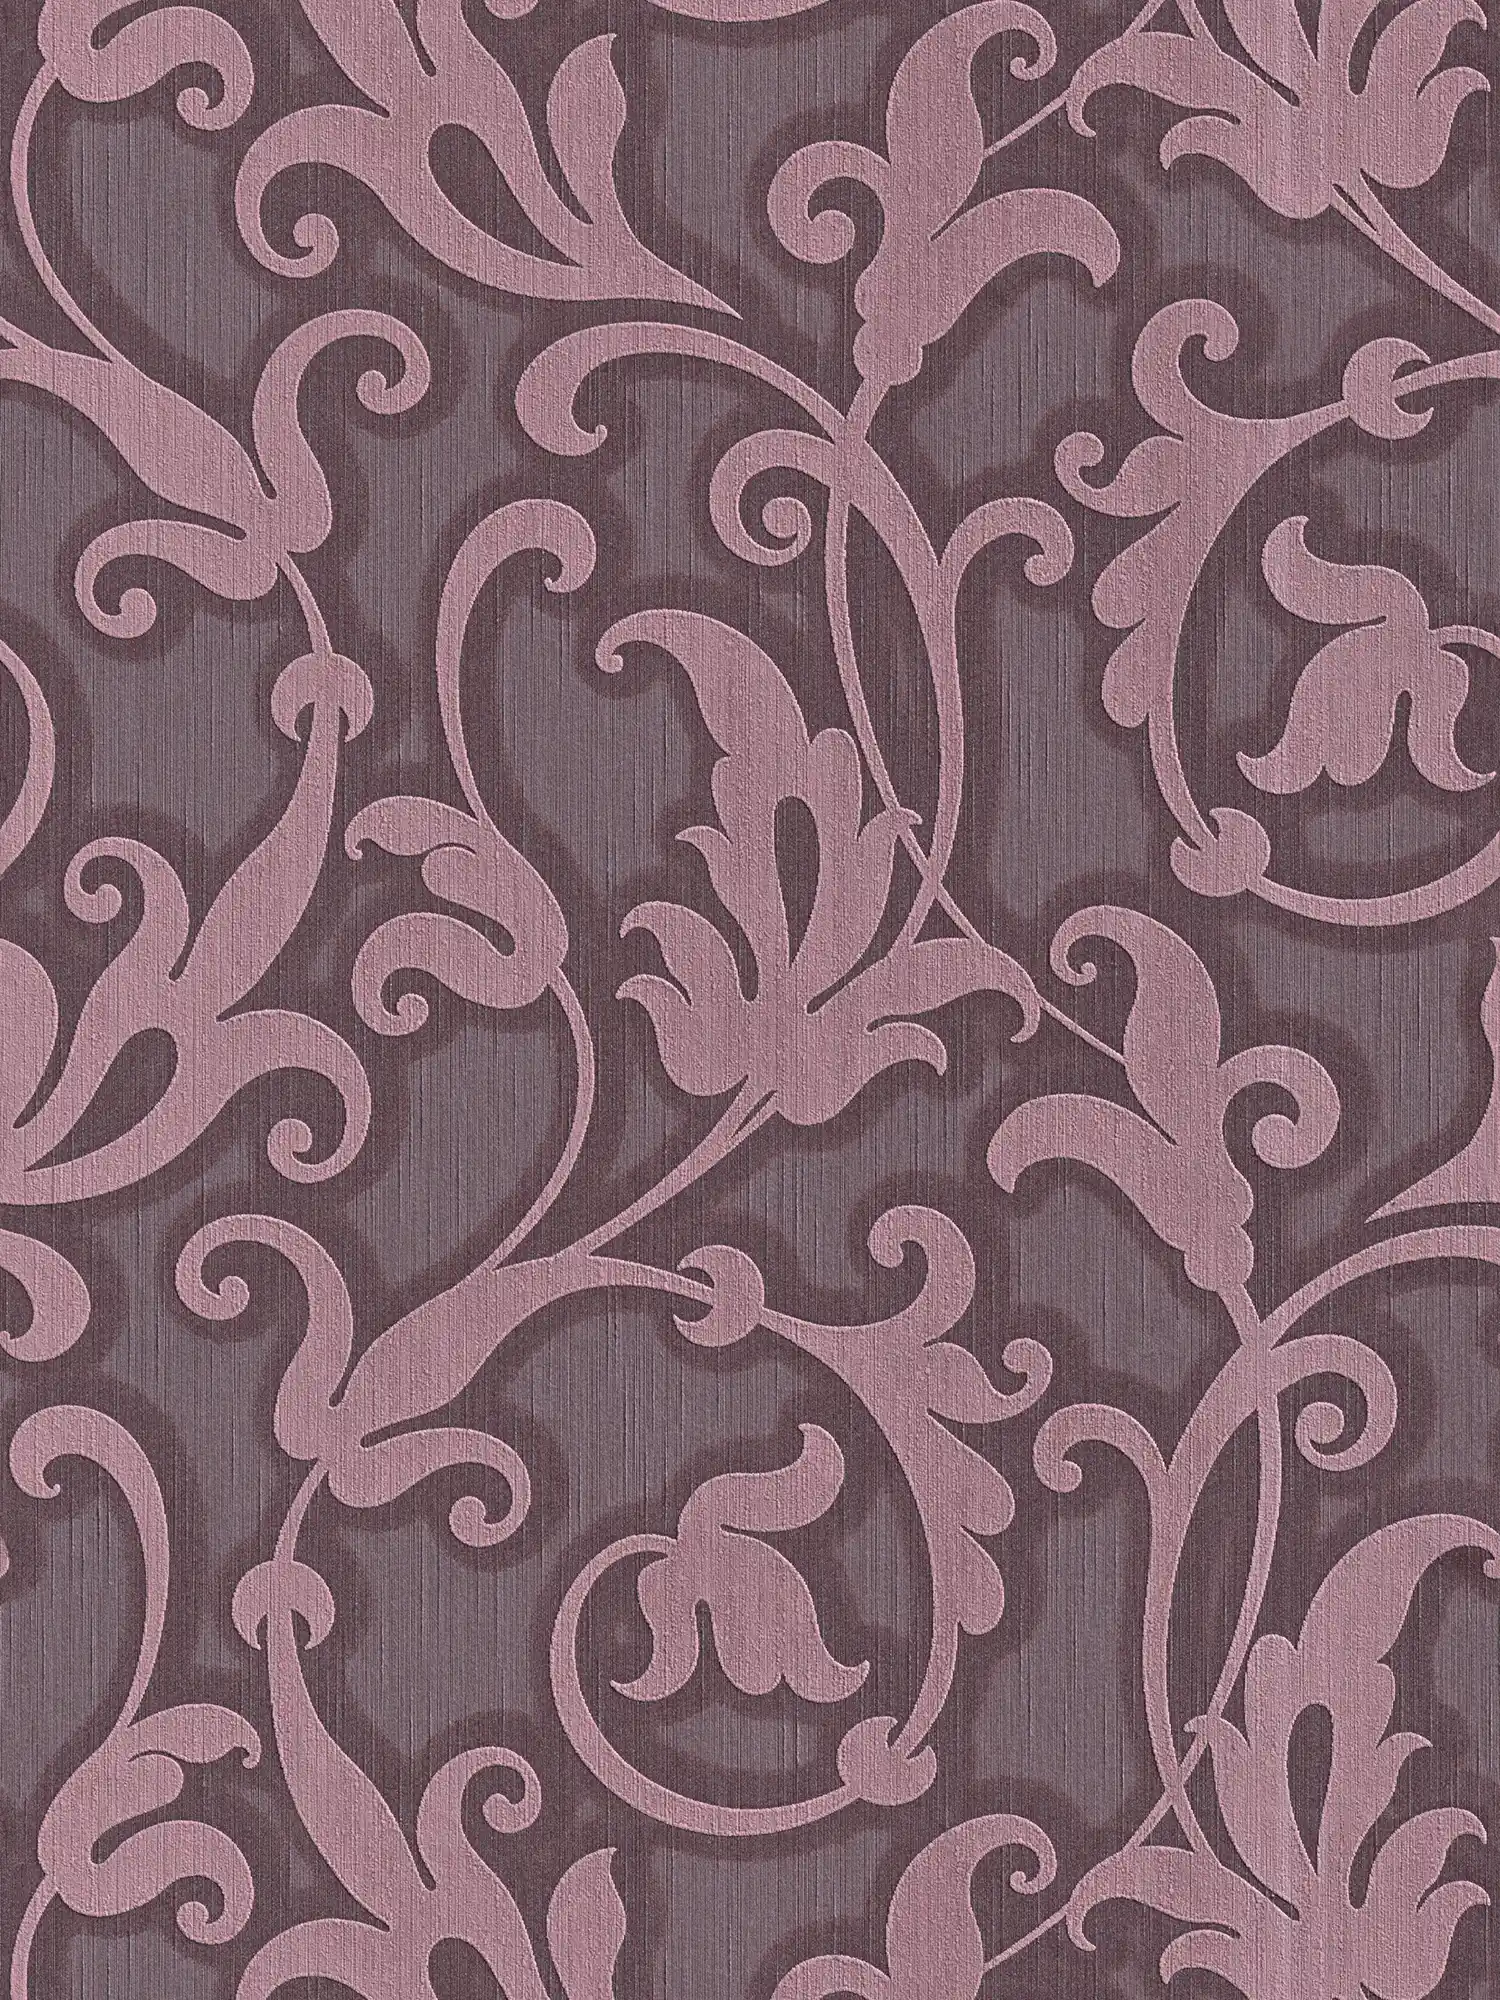 papier peint en papier baroque avec structure textile & motif gaufré - lilas, métallique
